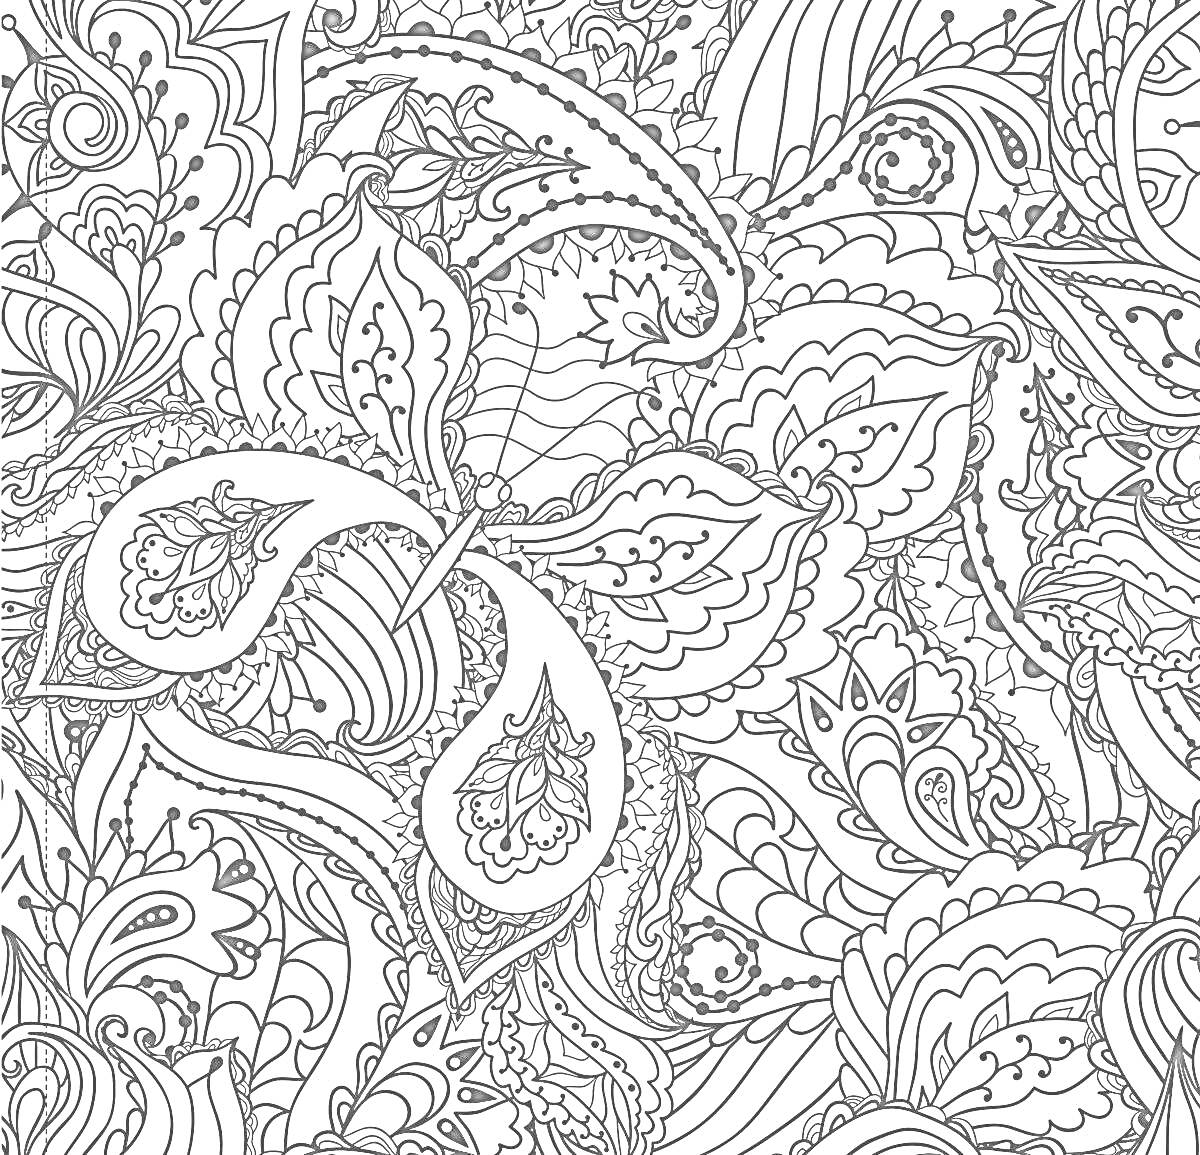 Раскраска Орнамент с большими завитками, листочками, цветами и волнистыми линиями